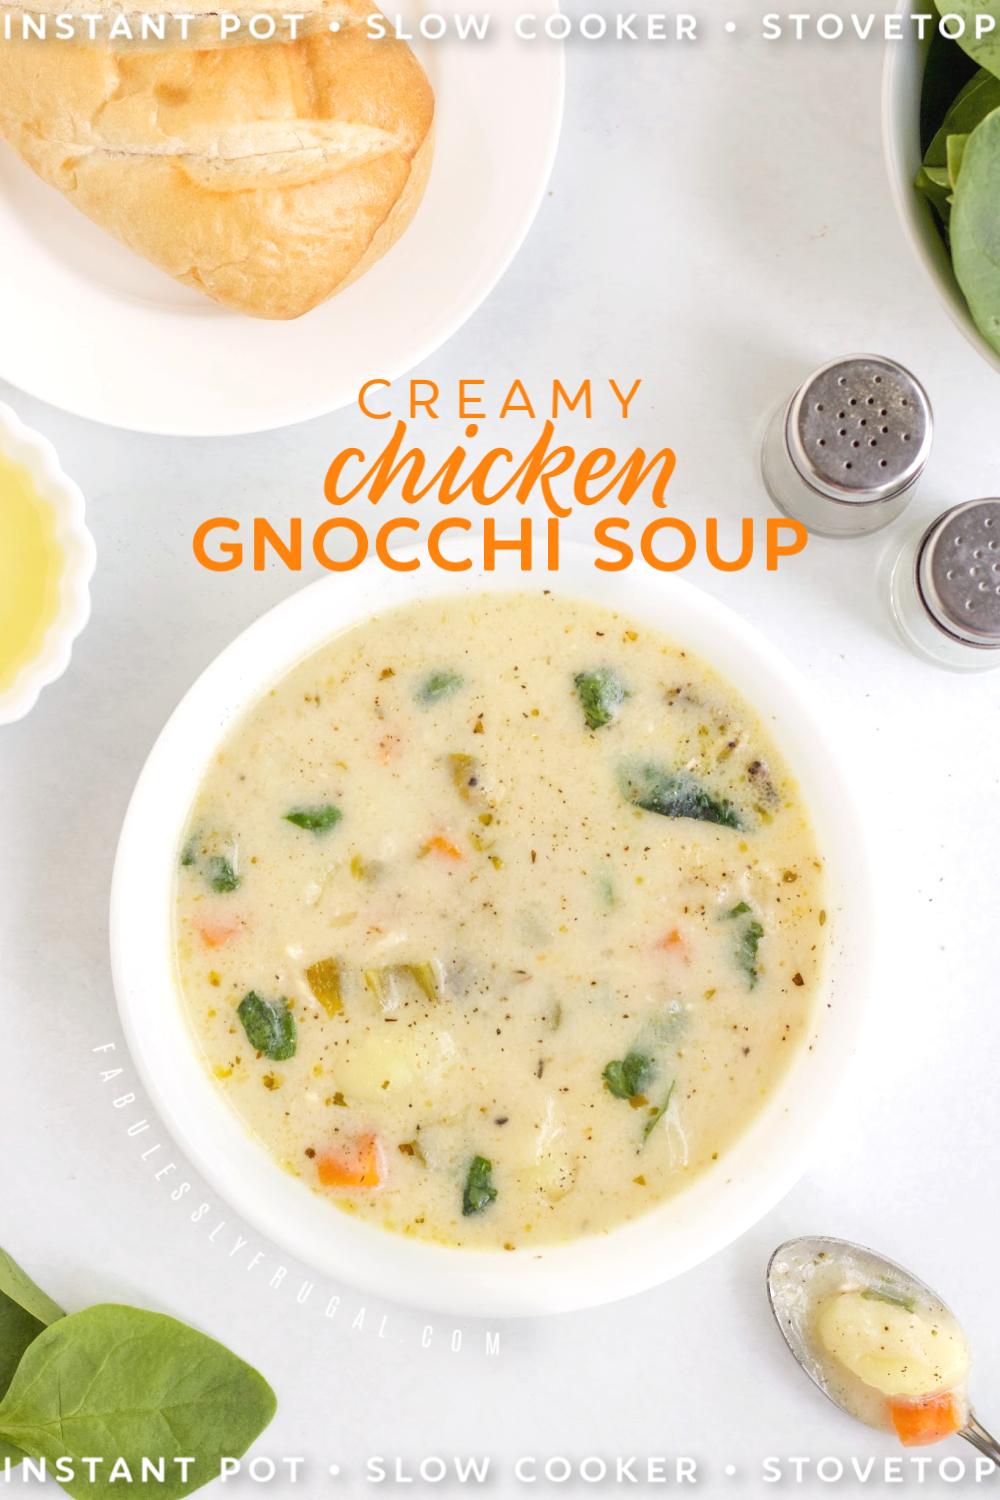 Instant pot chicken gnocchi soup